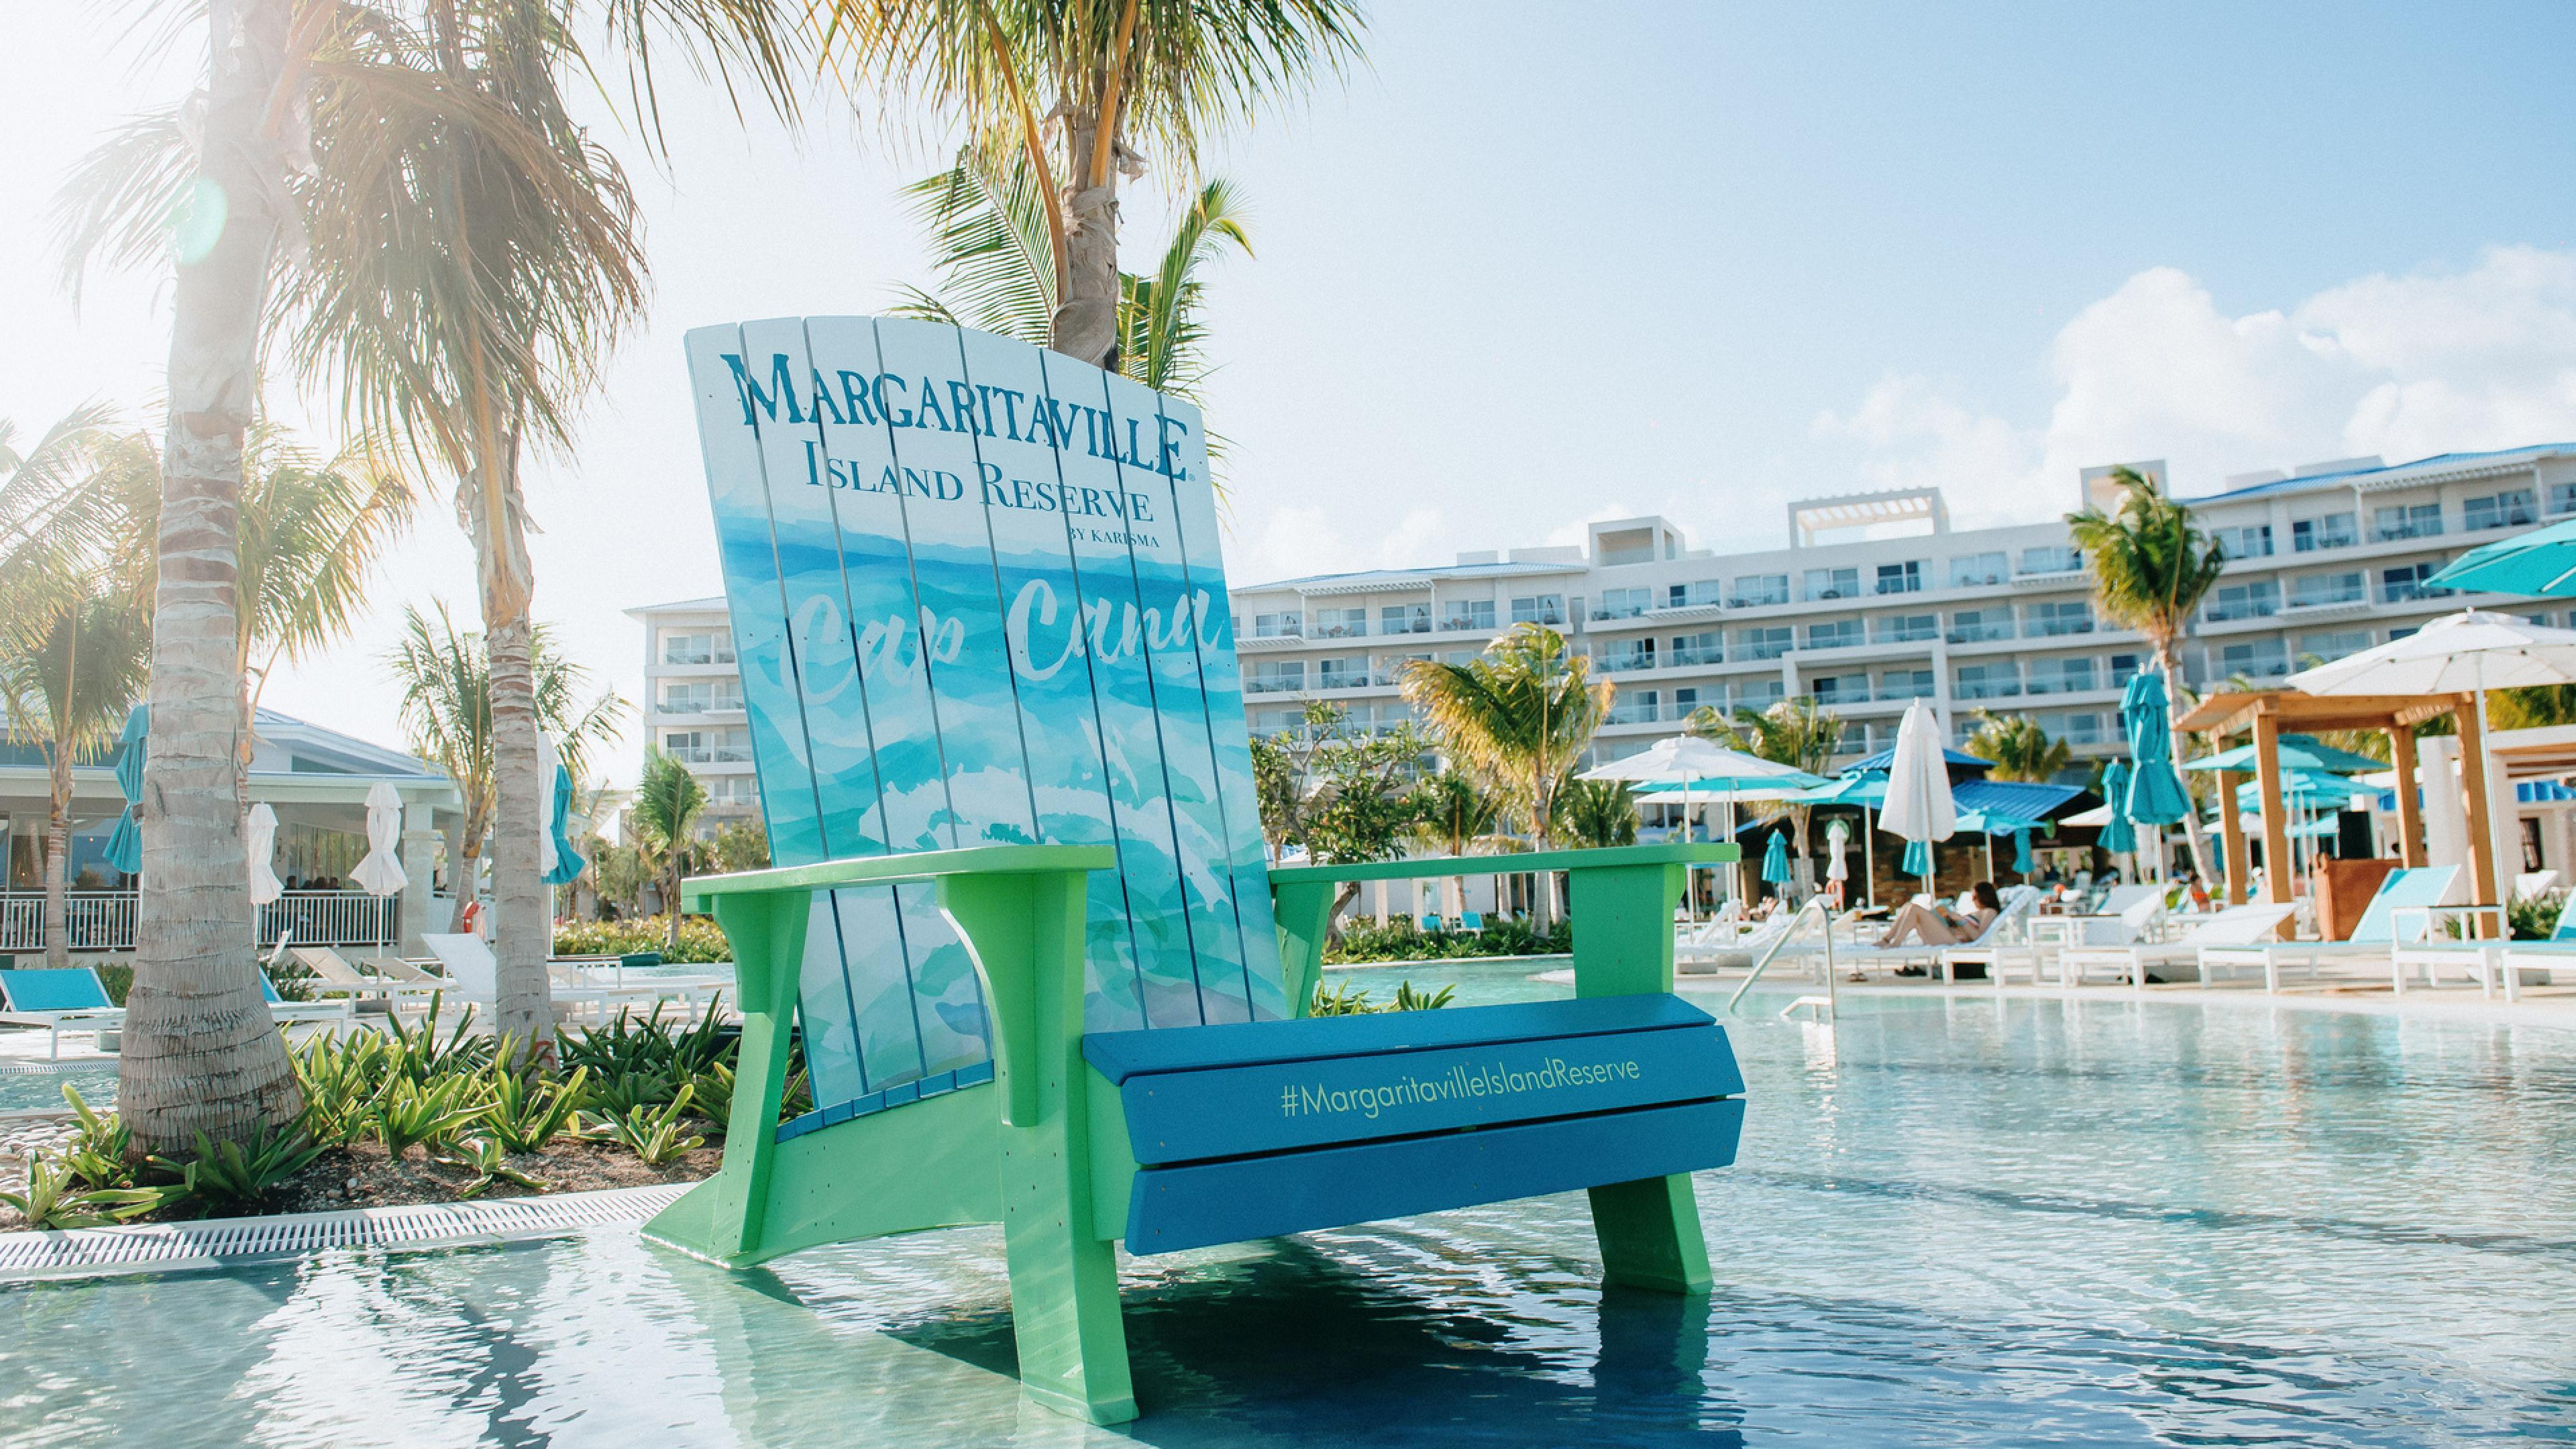 Margaritaville branded chair in pool deck